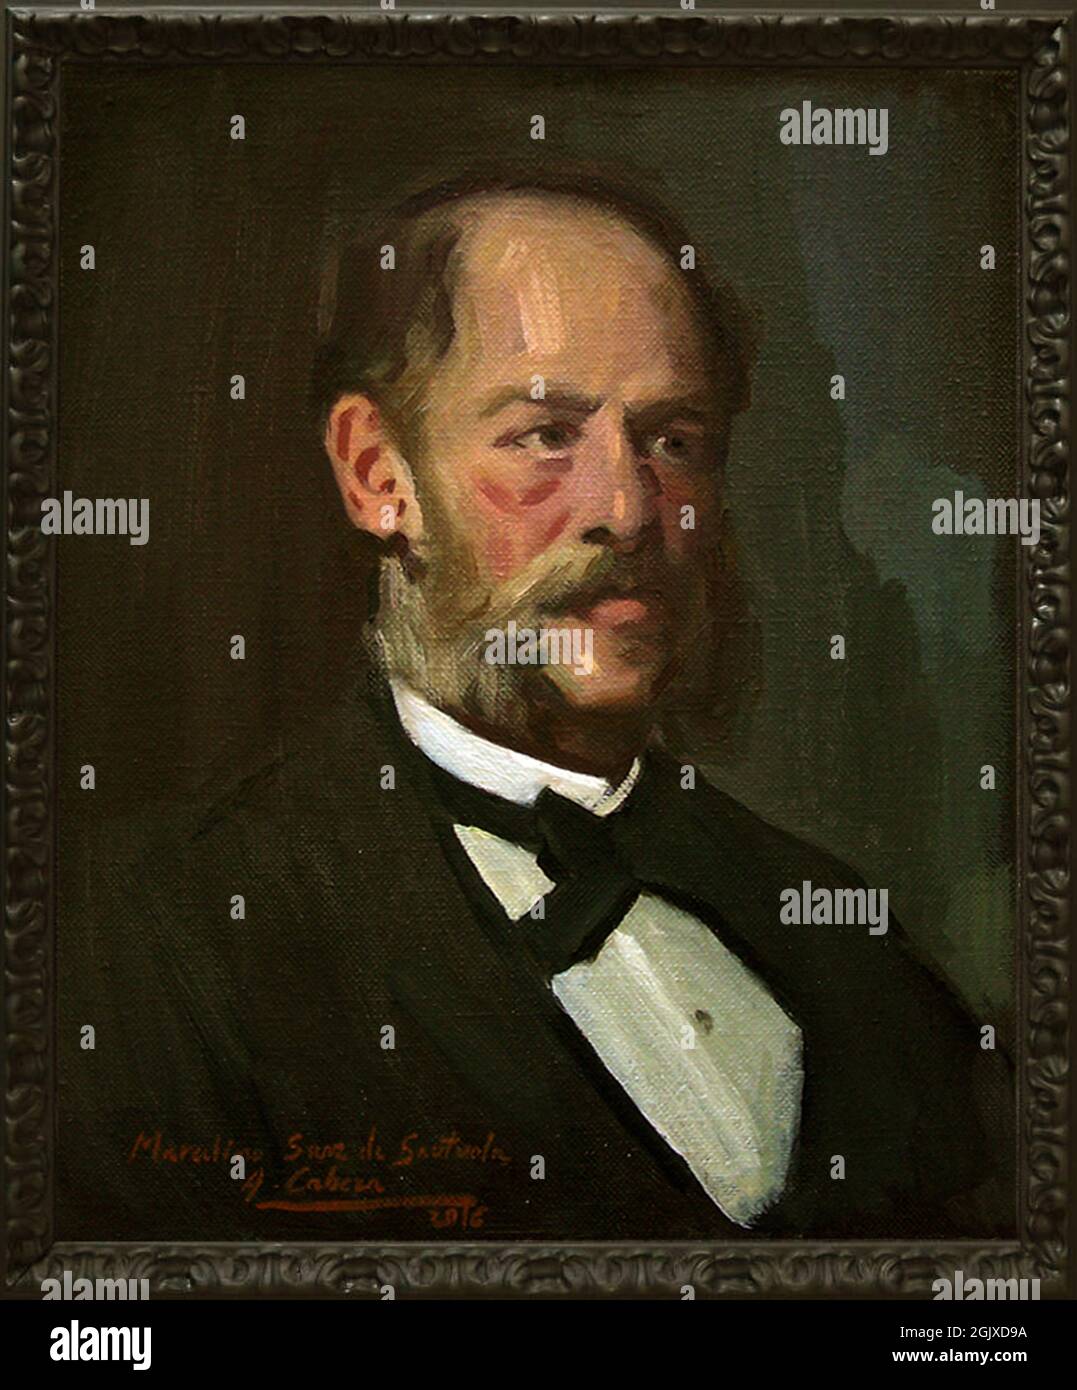 Retrato de Marcelino Sanz de Sautuola - por el pintor Alejandro Cabeza. Stock Photo